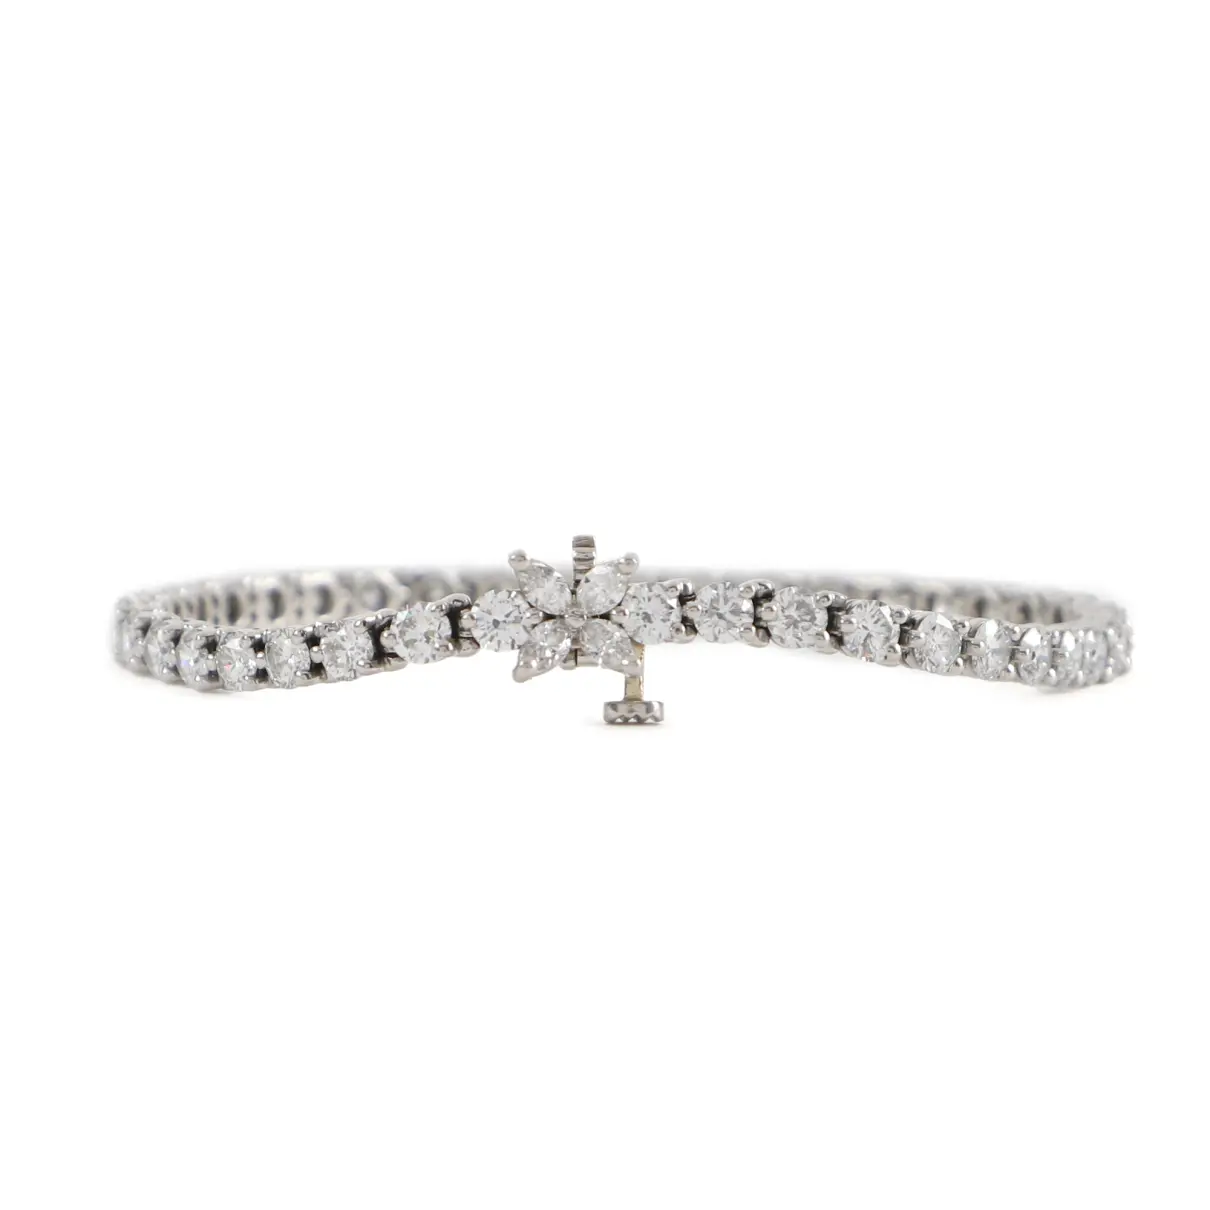 Victoria platinum bracelet